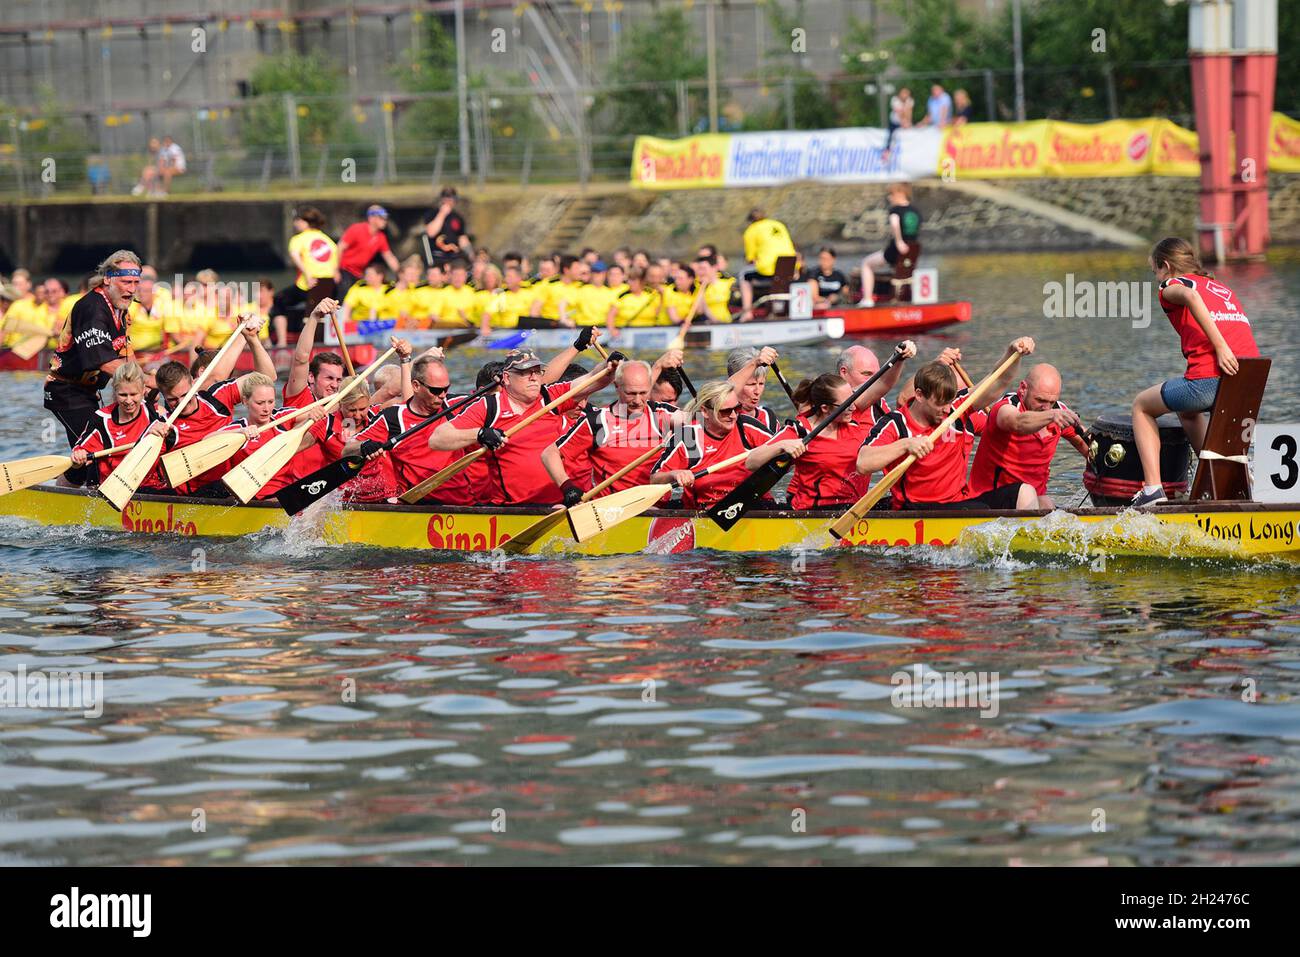 Ein Drachenboot-Rennen en Allemagne - Une course de bateaux-dragons en Allemagne Banque D'Images